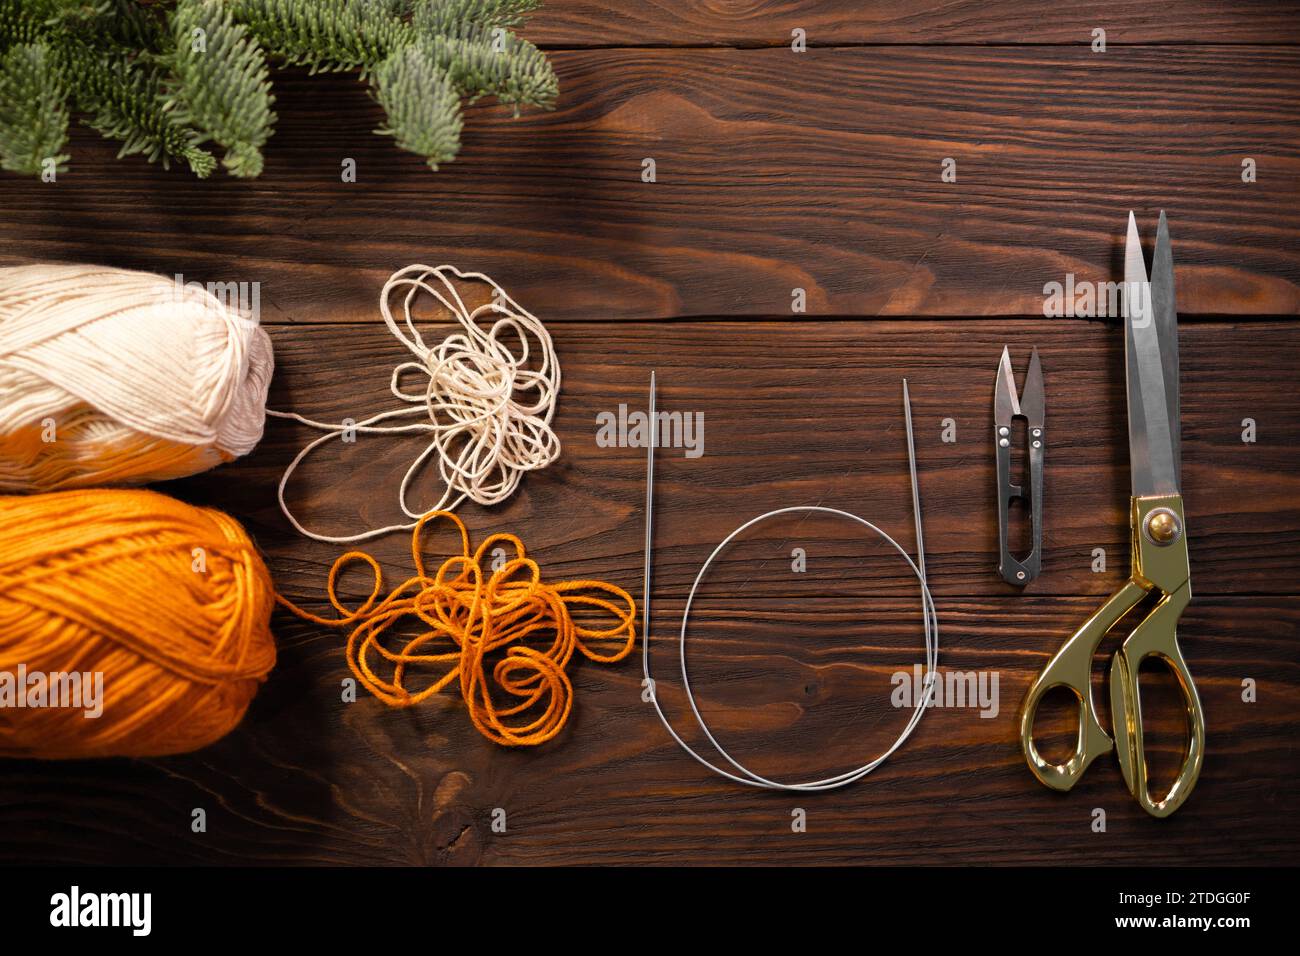 ciseaux, aiguilles à tricoter et fils sur une table en bois décorée de branches de sapin Banque D'Images